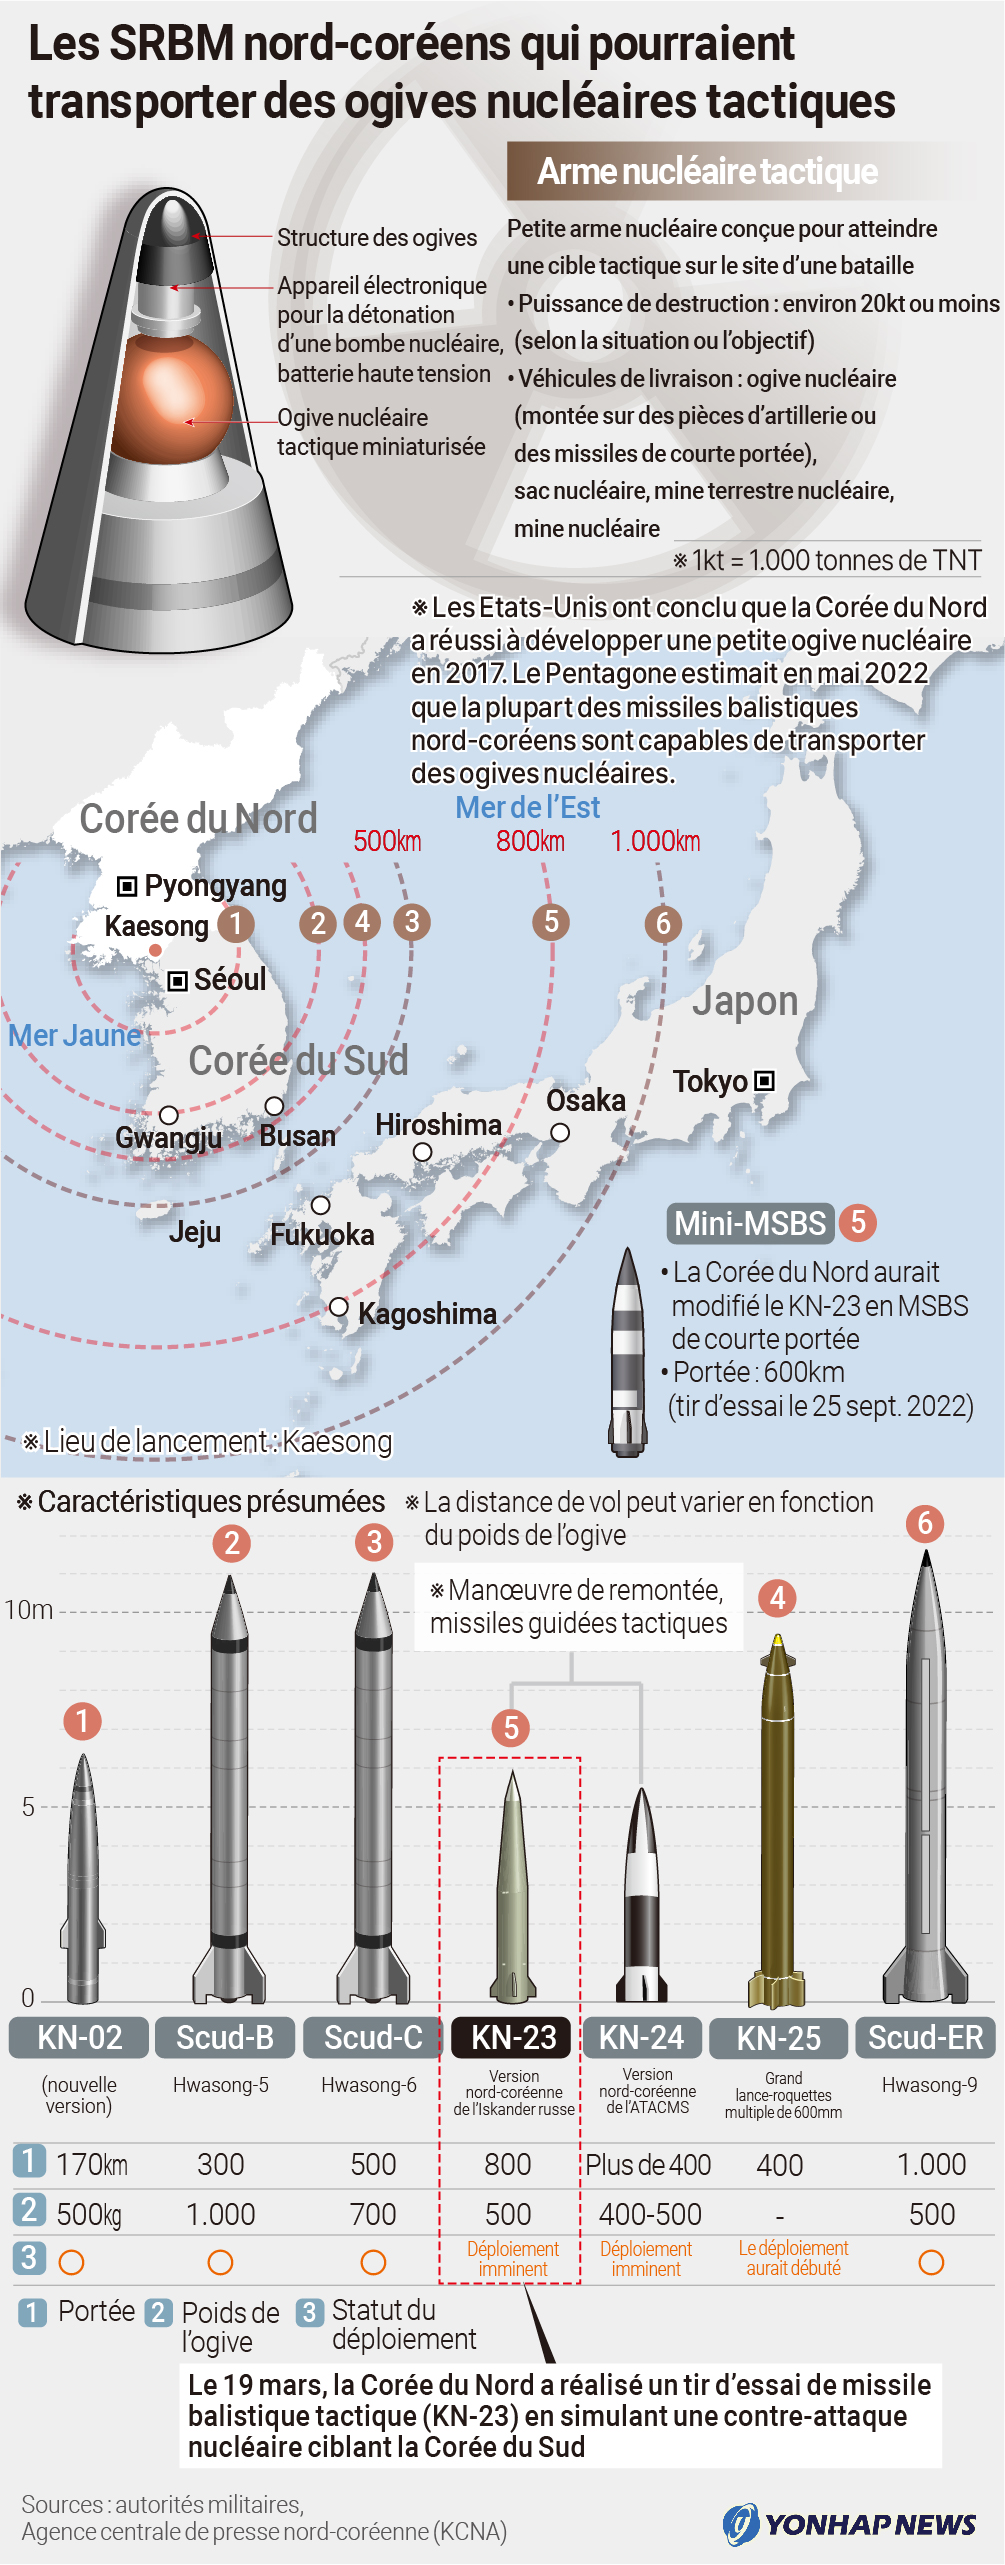 SRBM nord-coréens et ogives nucléaires